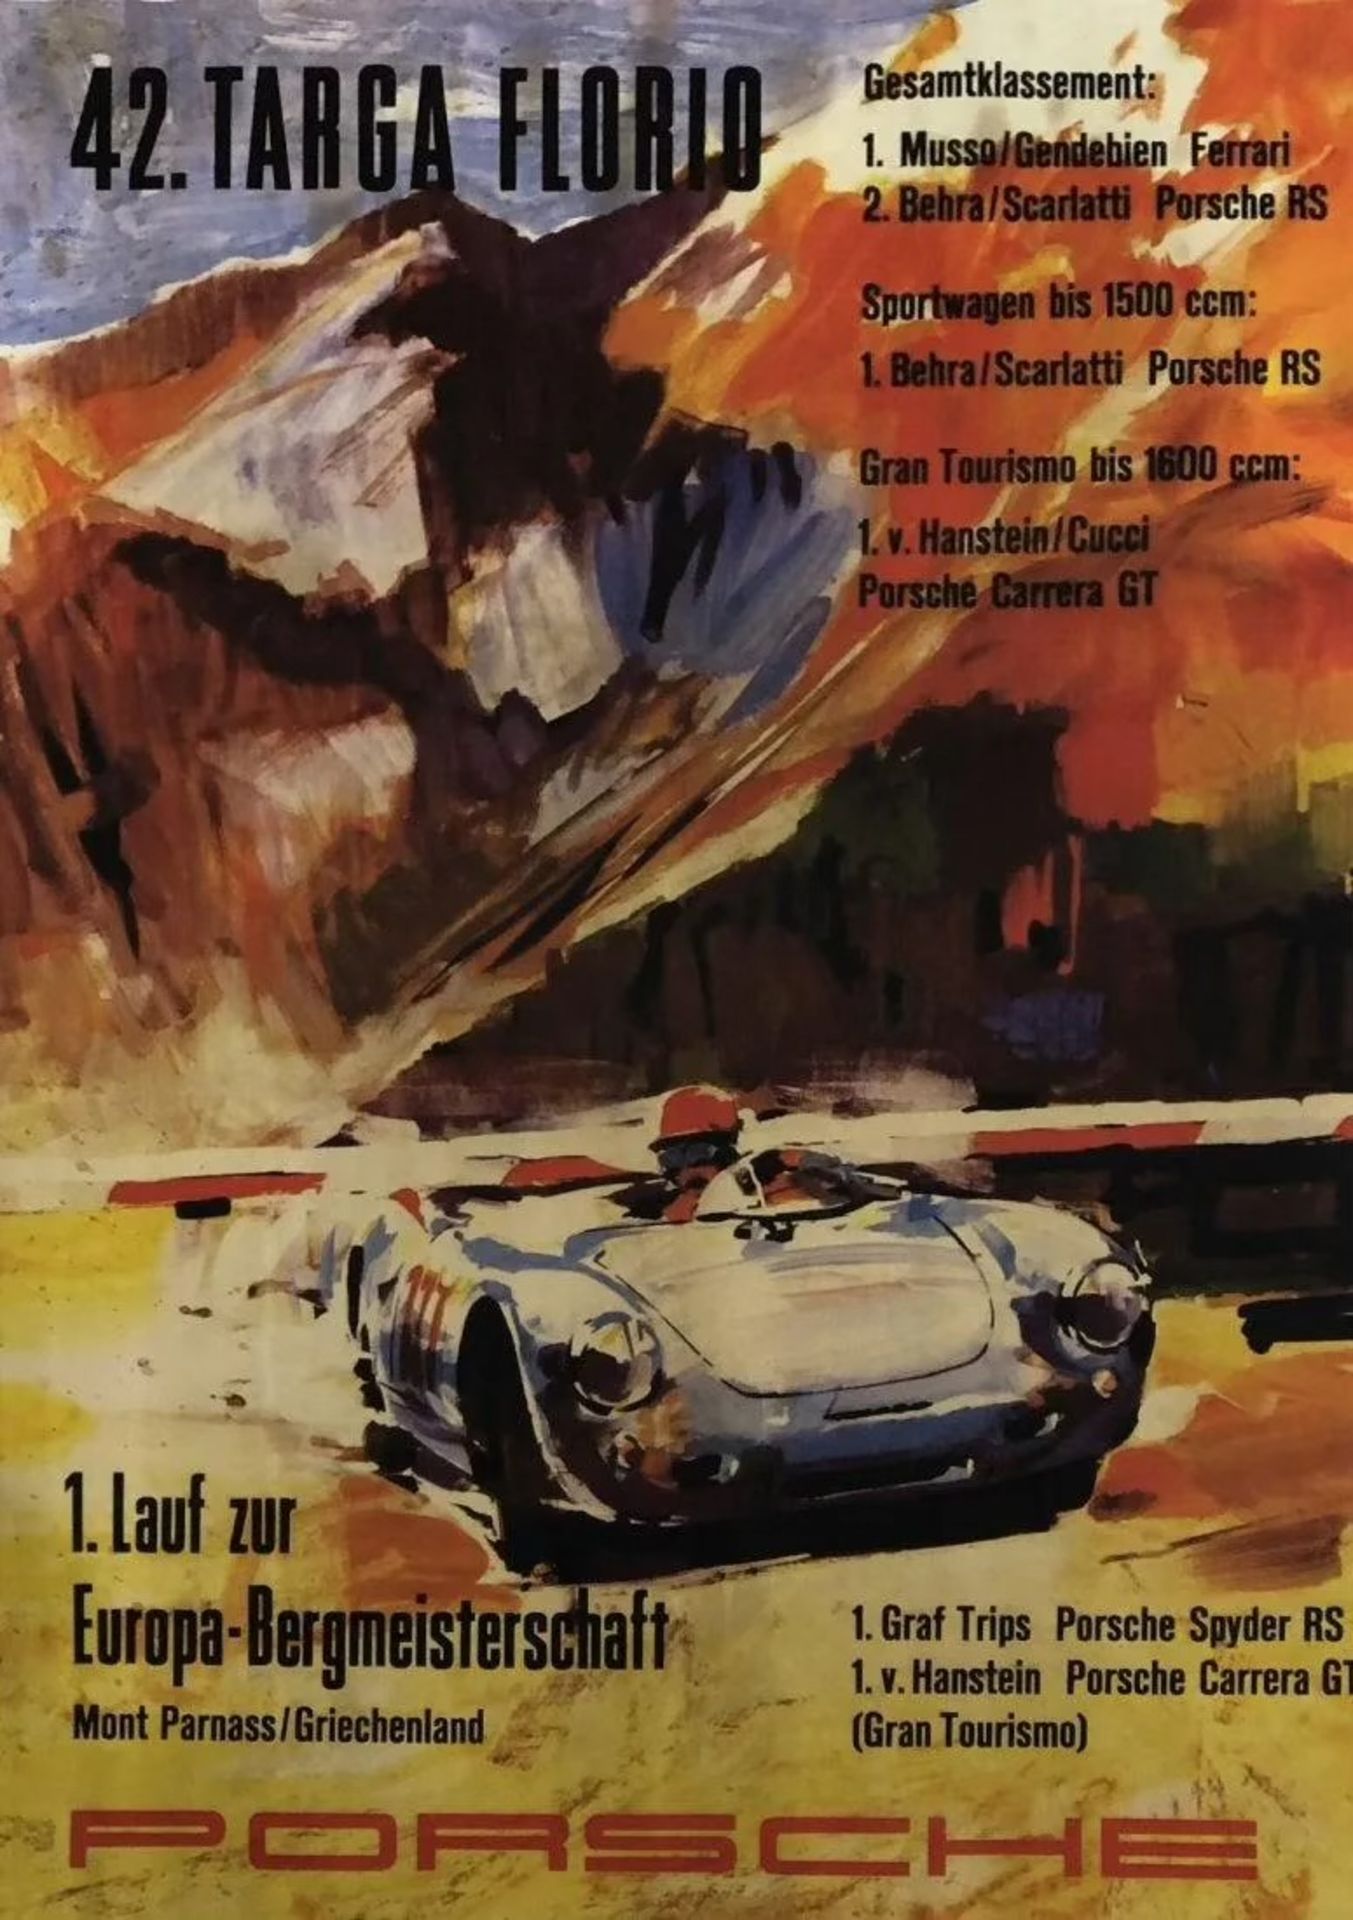 Porsche Race Poster "Targa Florio"